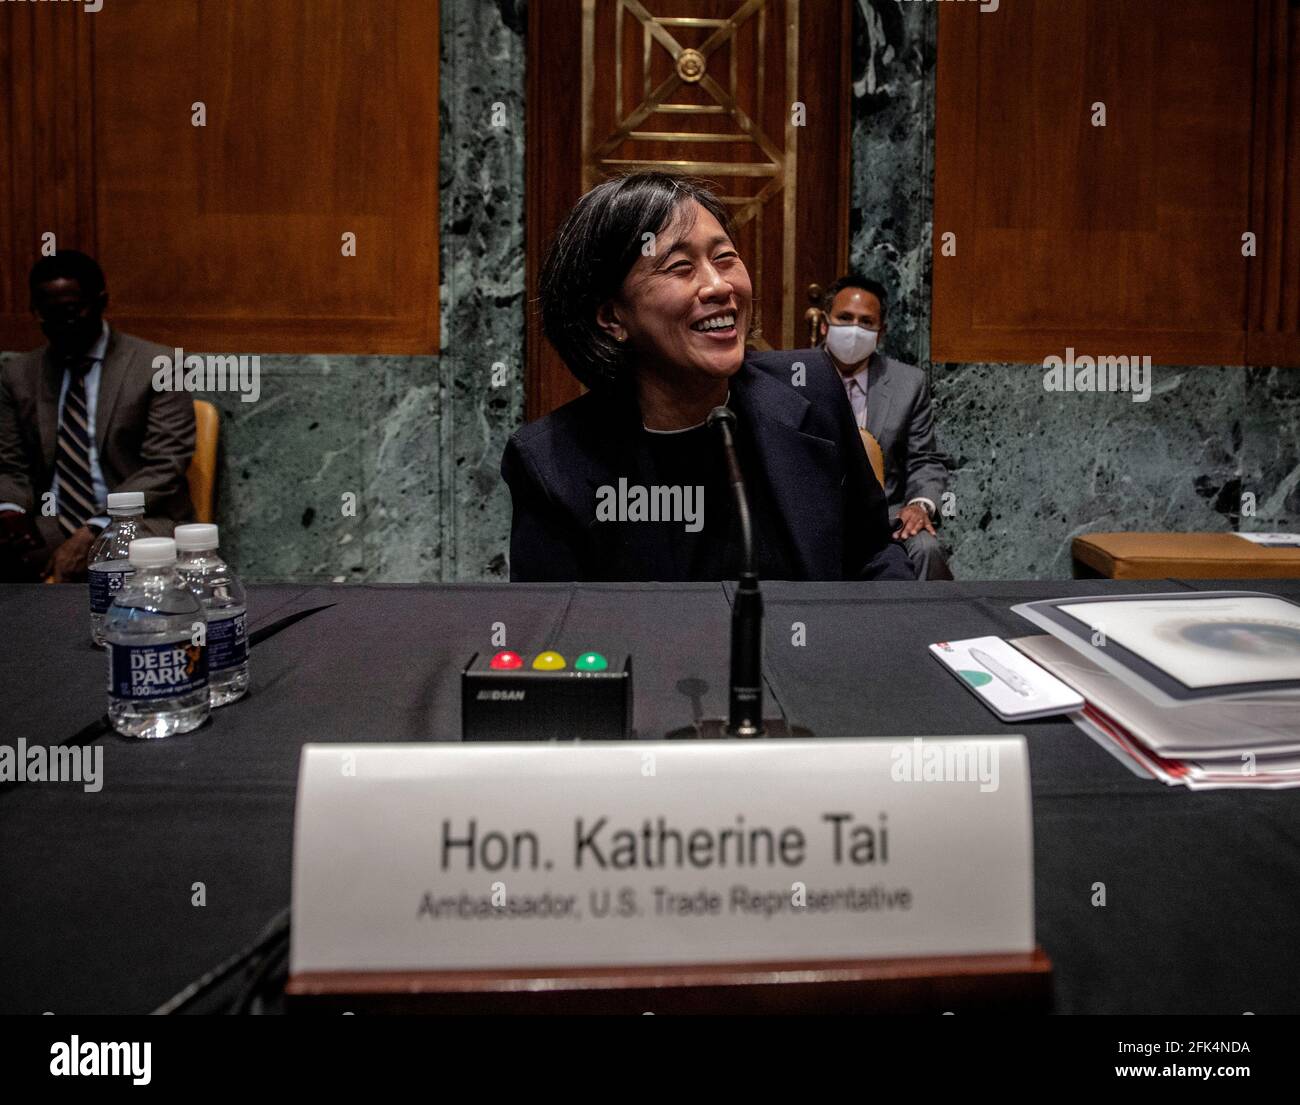 WASHINGTON, DC – 28. APRIL: Botschafterin Katherine Tai lächelt, als Fotografen ihr Foto zum Abschluss der Anhörung des Unterausschusses für die Haushaltsmittel des Senats für Handel, Justiz, Wissenschaft und verwandte Agenturen machen, um die vorgeschlagenen Haushaltsschätzungen und die Rechtfertigung für das Geschäftsjahr 2022 für das Büro des US-Handelsbeauftragten in Washington, DC zu prüfen. (Foto von Bill O'Leary/Pool/Sipa USA) Stockfoto